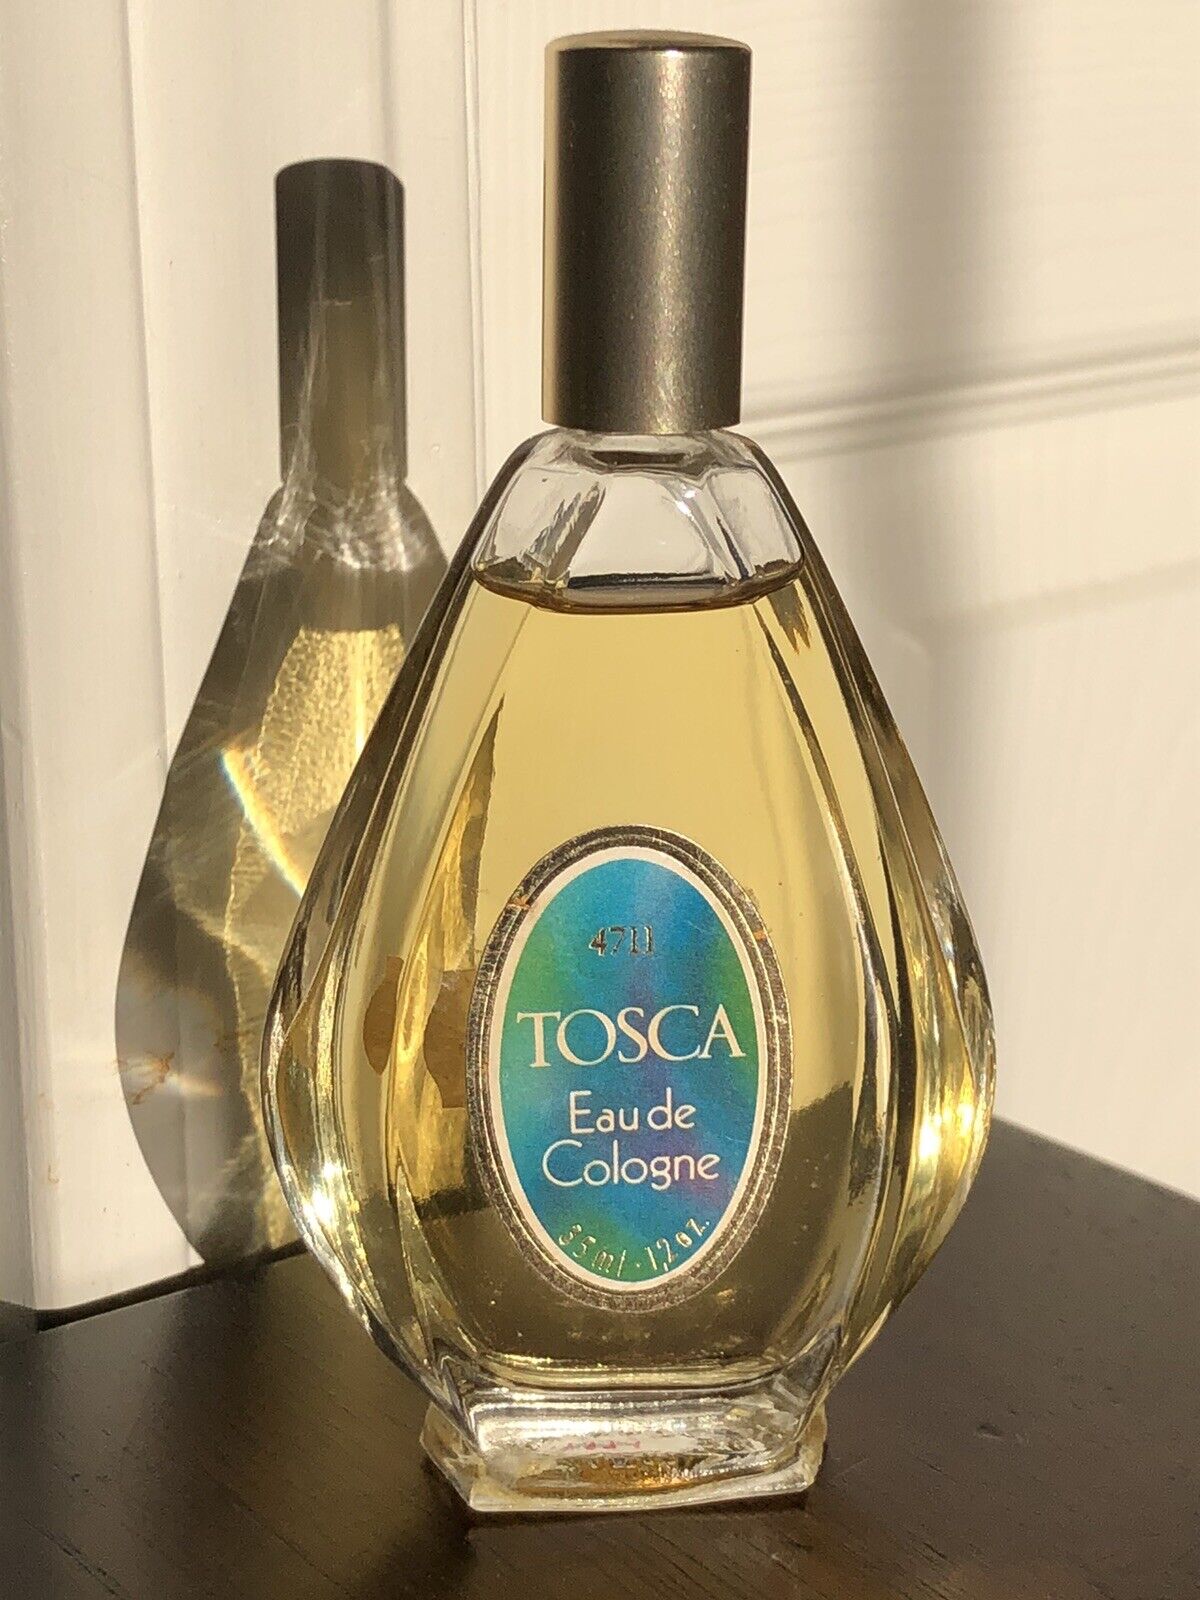 Vintage Tosca 4711 Eau de Cologne glass bottle 1.2oz 35ml splash